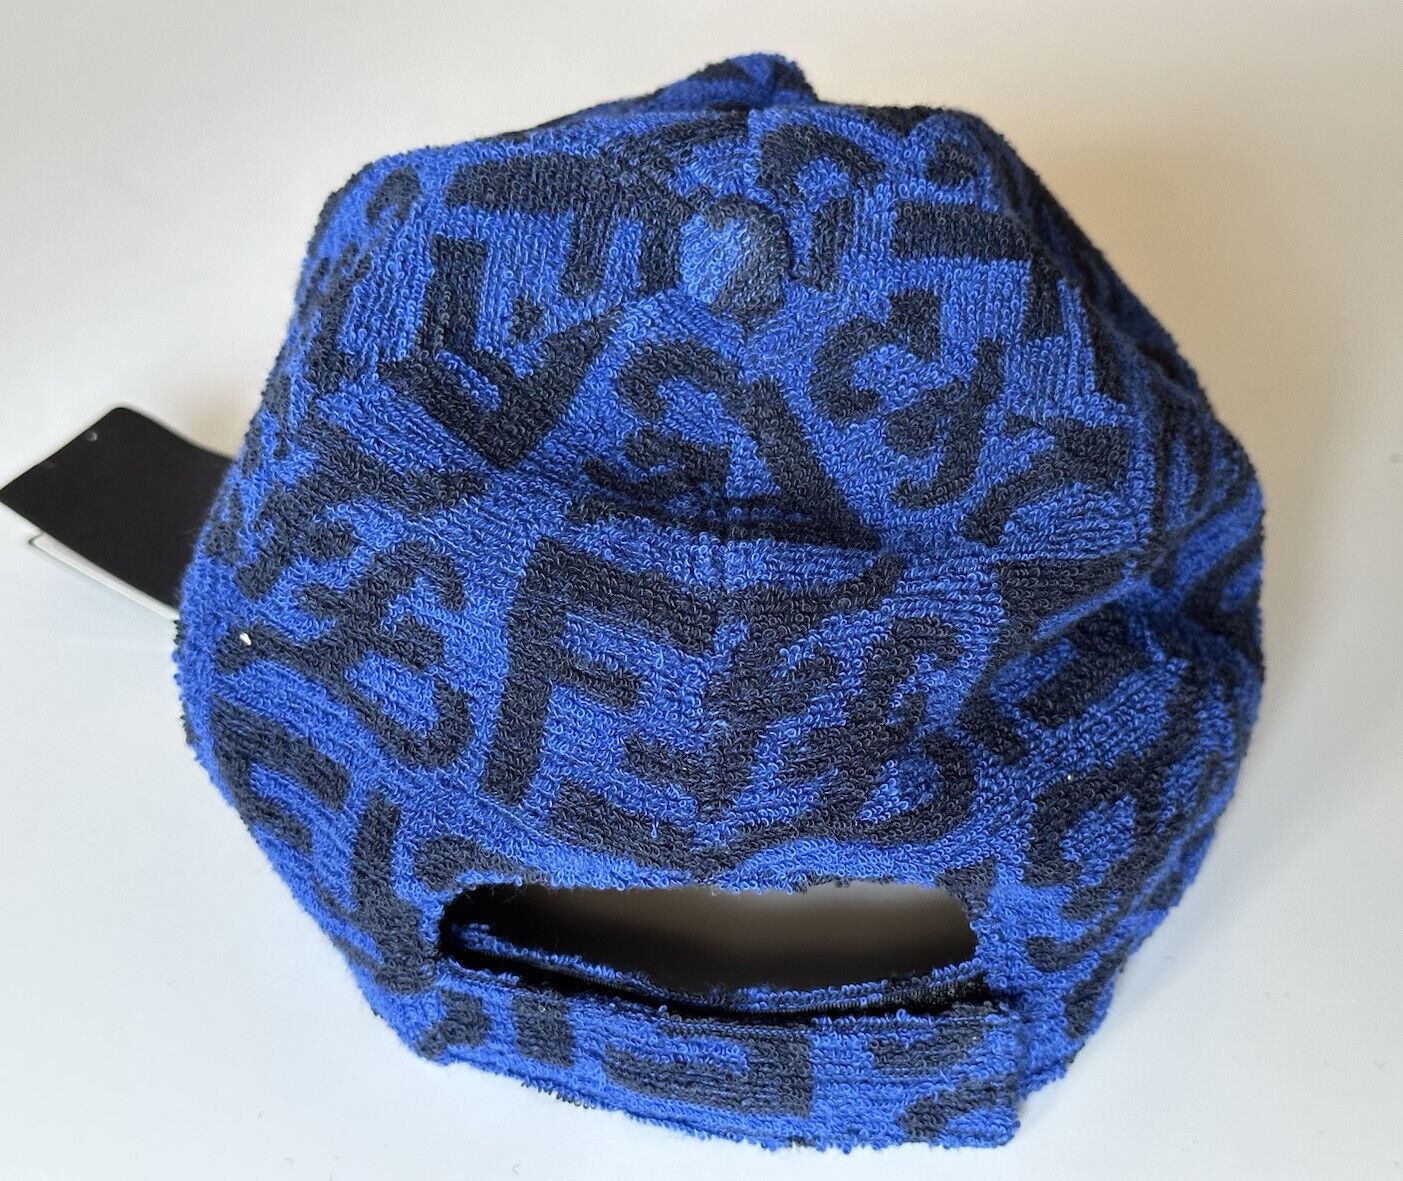 Бейсбольная кепка Fendi из махровой ткани, синяя/красная шляпа, Сделано в Италии, FXQ776, NWT, 530 долларов США. 